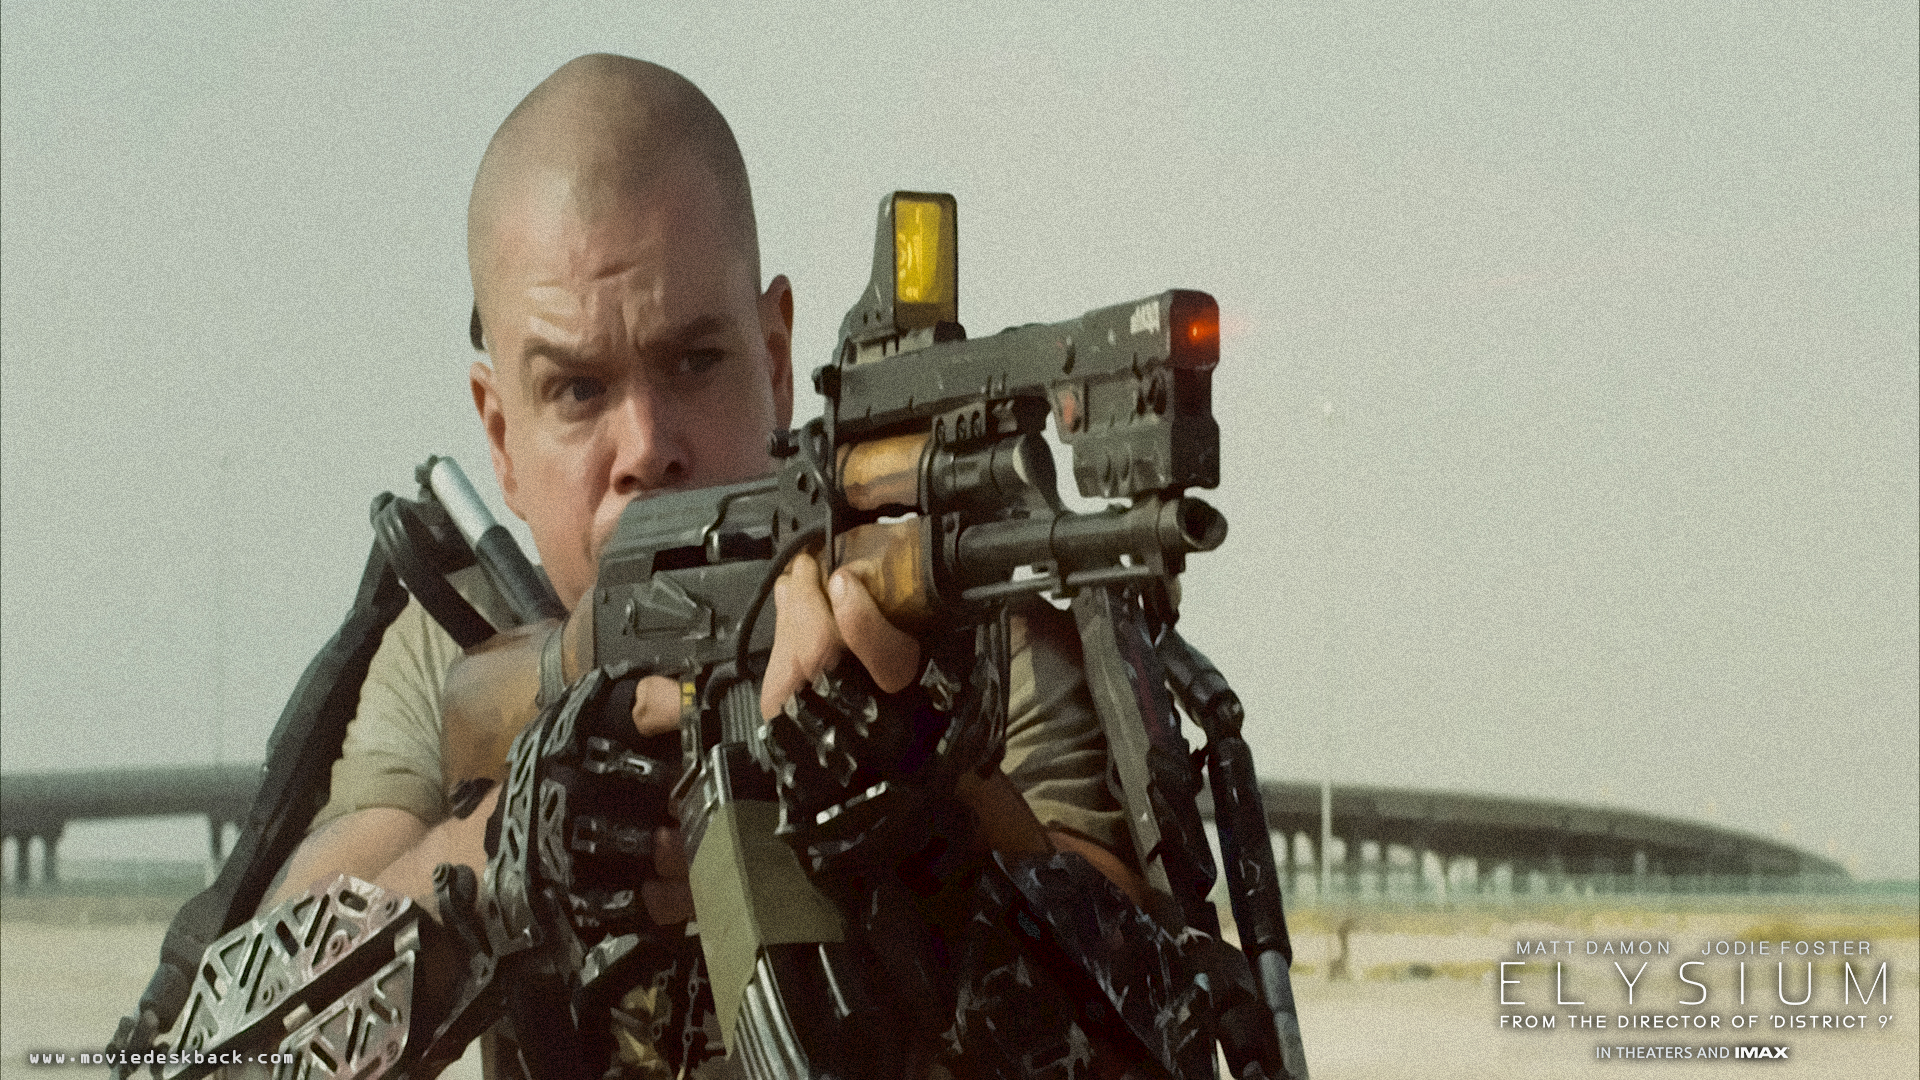 fondo de pantalla de elysium,pistola,soldado,película,militar,juego de disparos